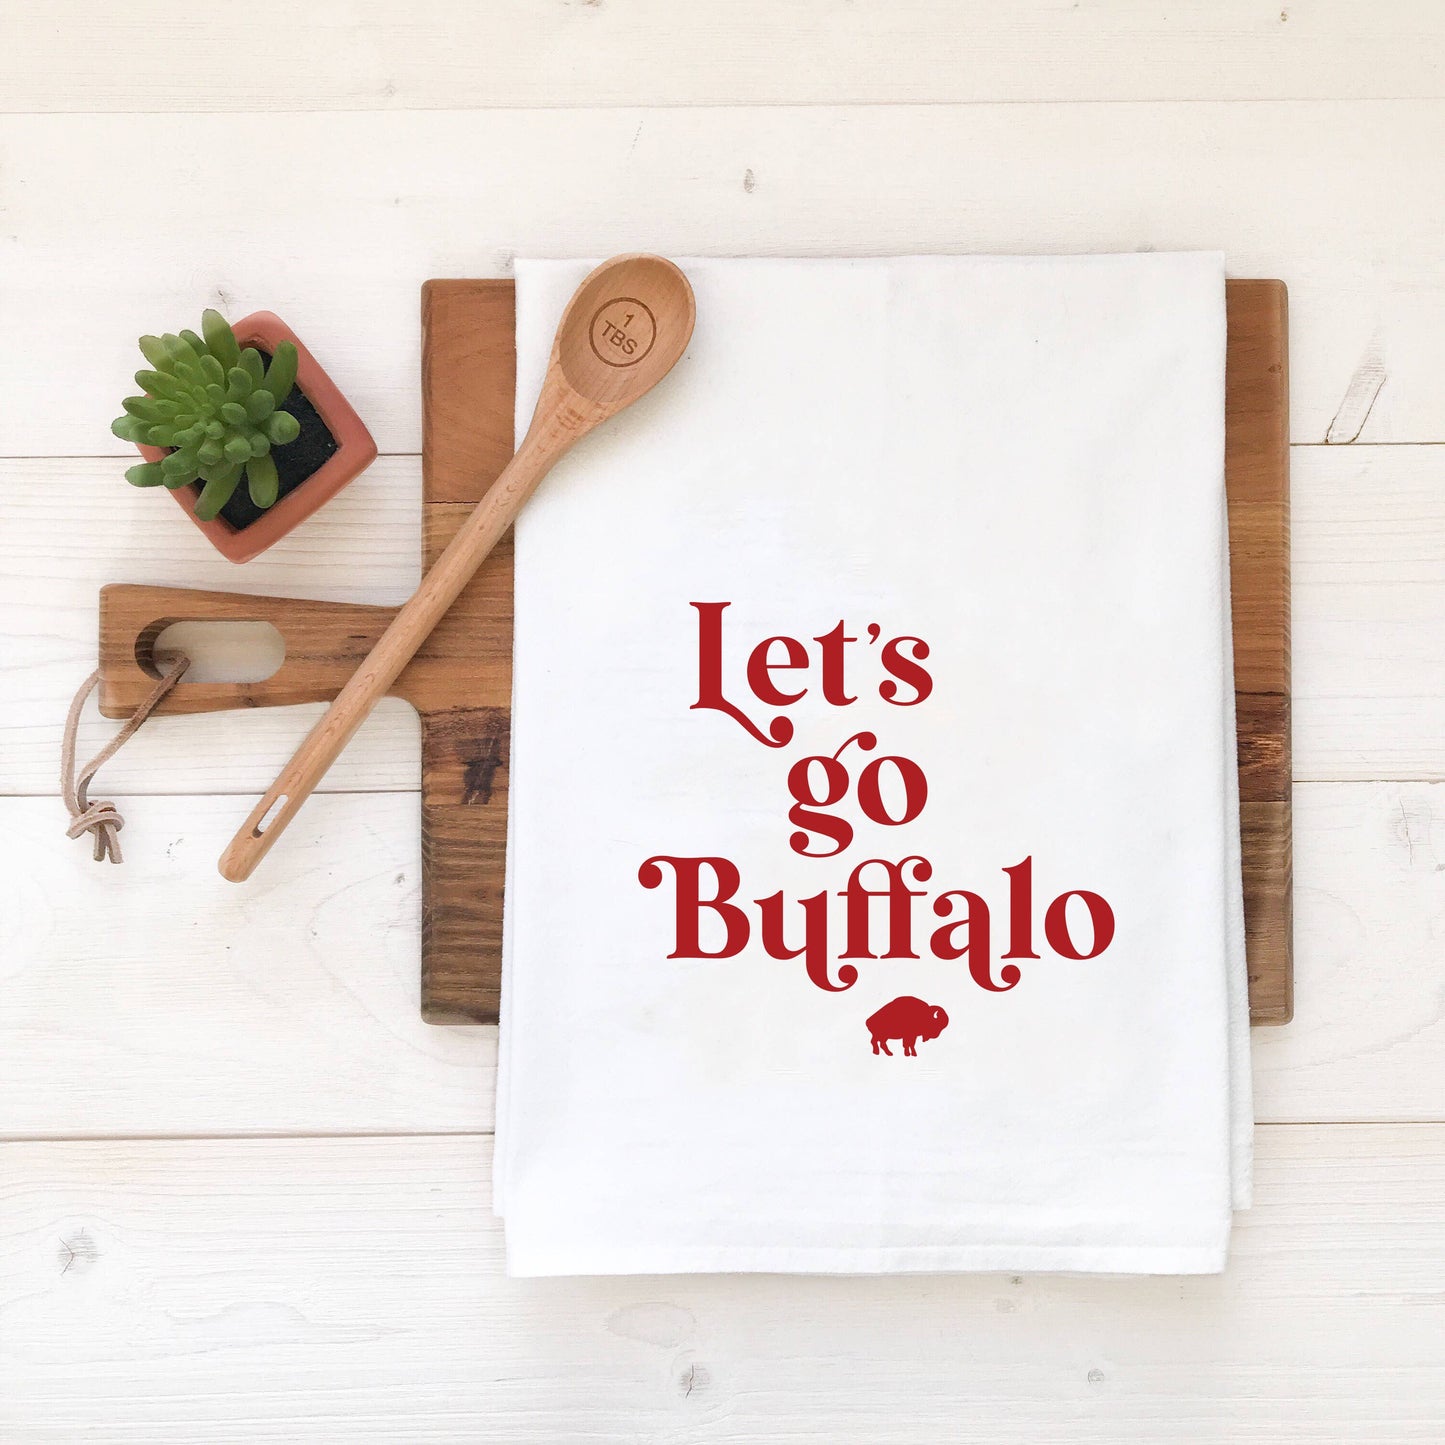 Buffalo Bills NY Tea Towel - Let's Go Buffalo